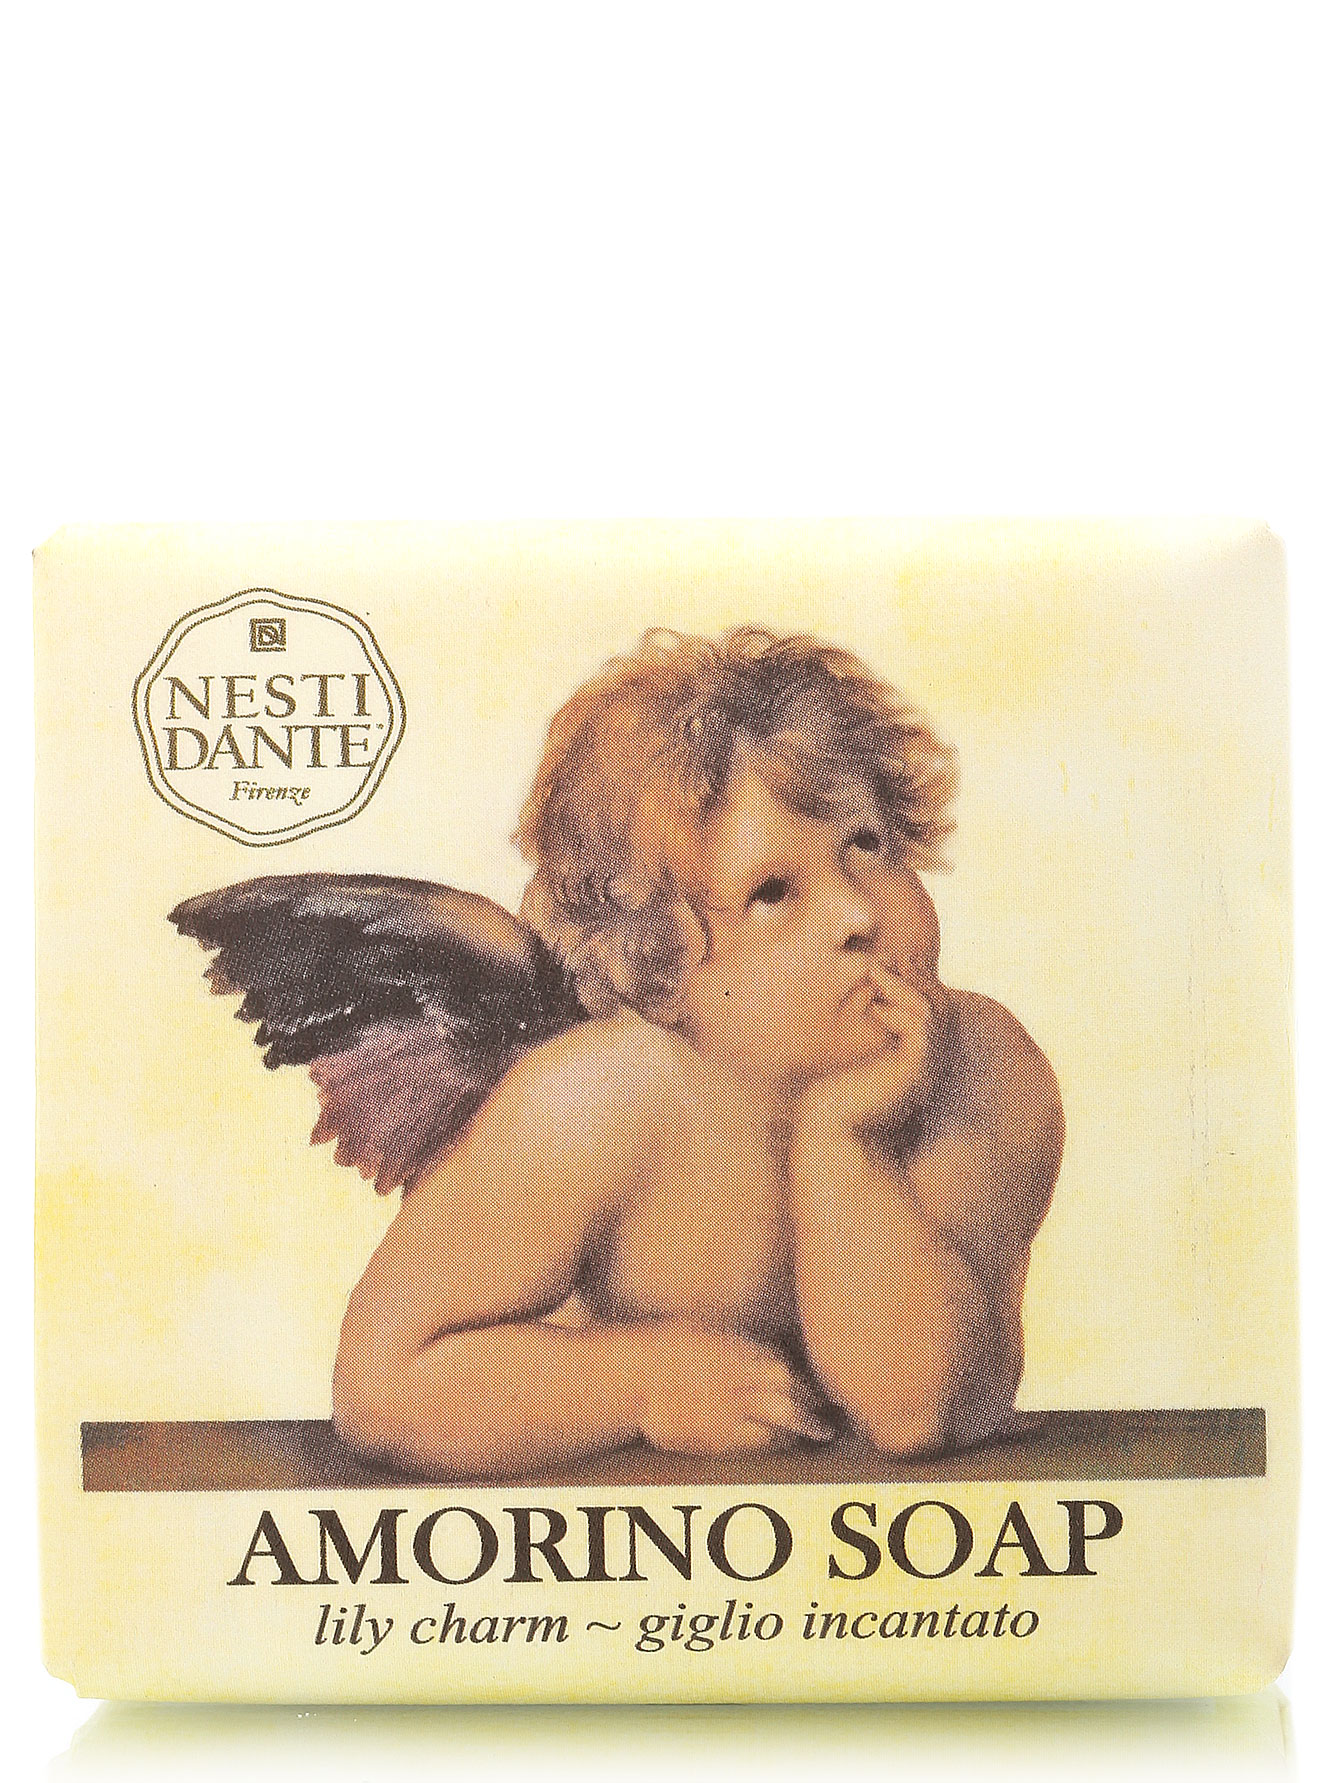 Мыло Amorino Soap, 150 г - Общий вид